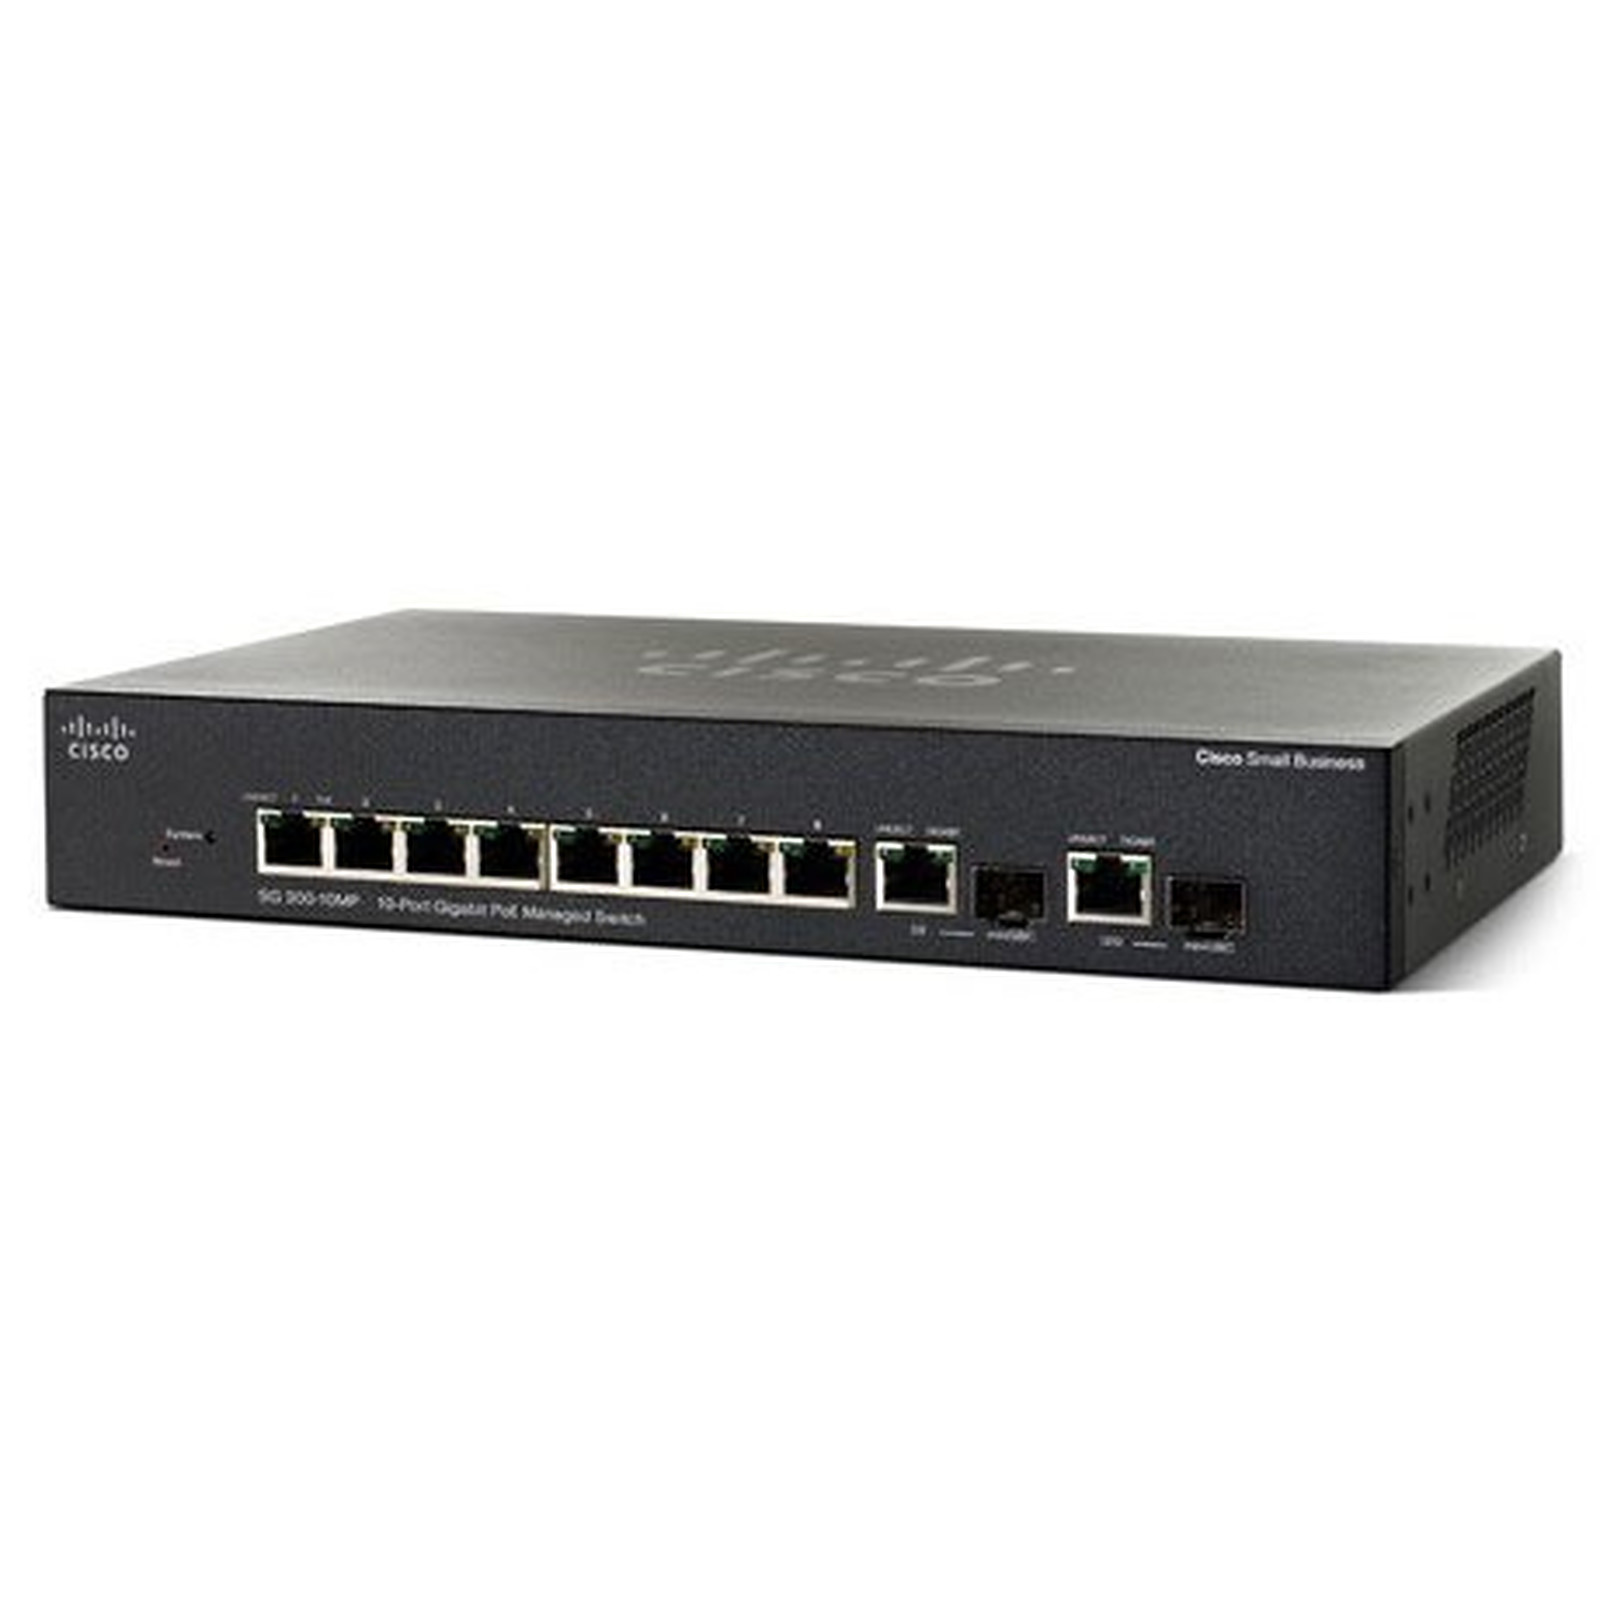 Cisco SG250-10P - Switch Cisco Systems